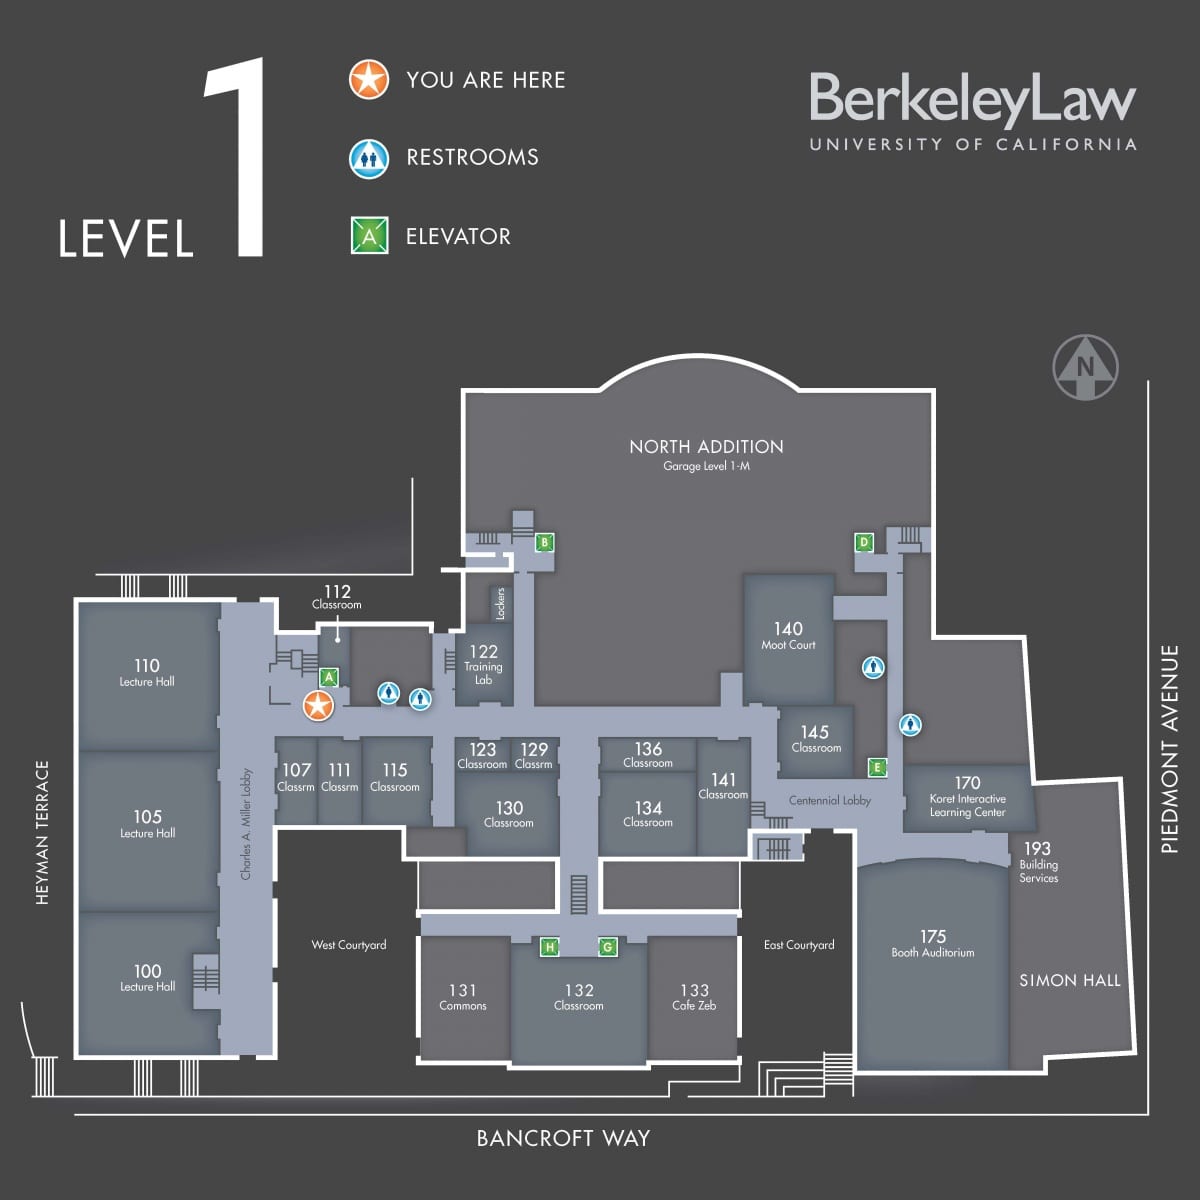 Floorplan map of UC Berkeley School of Law